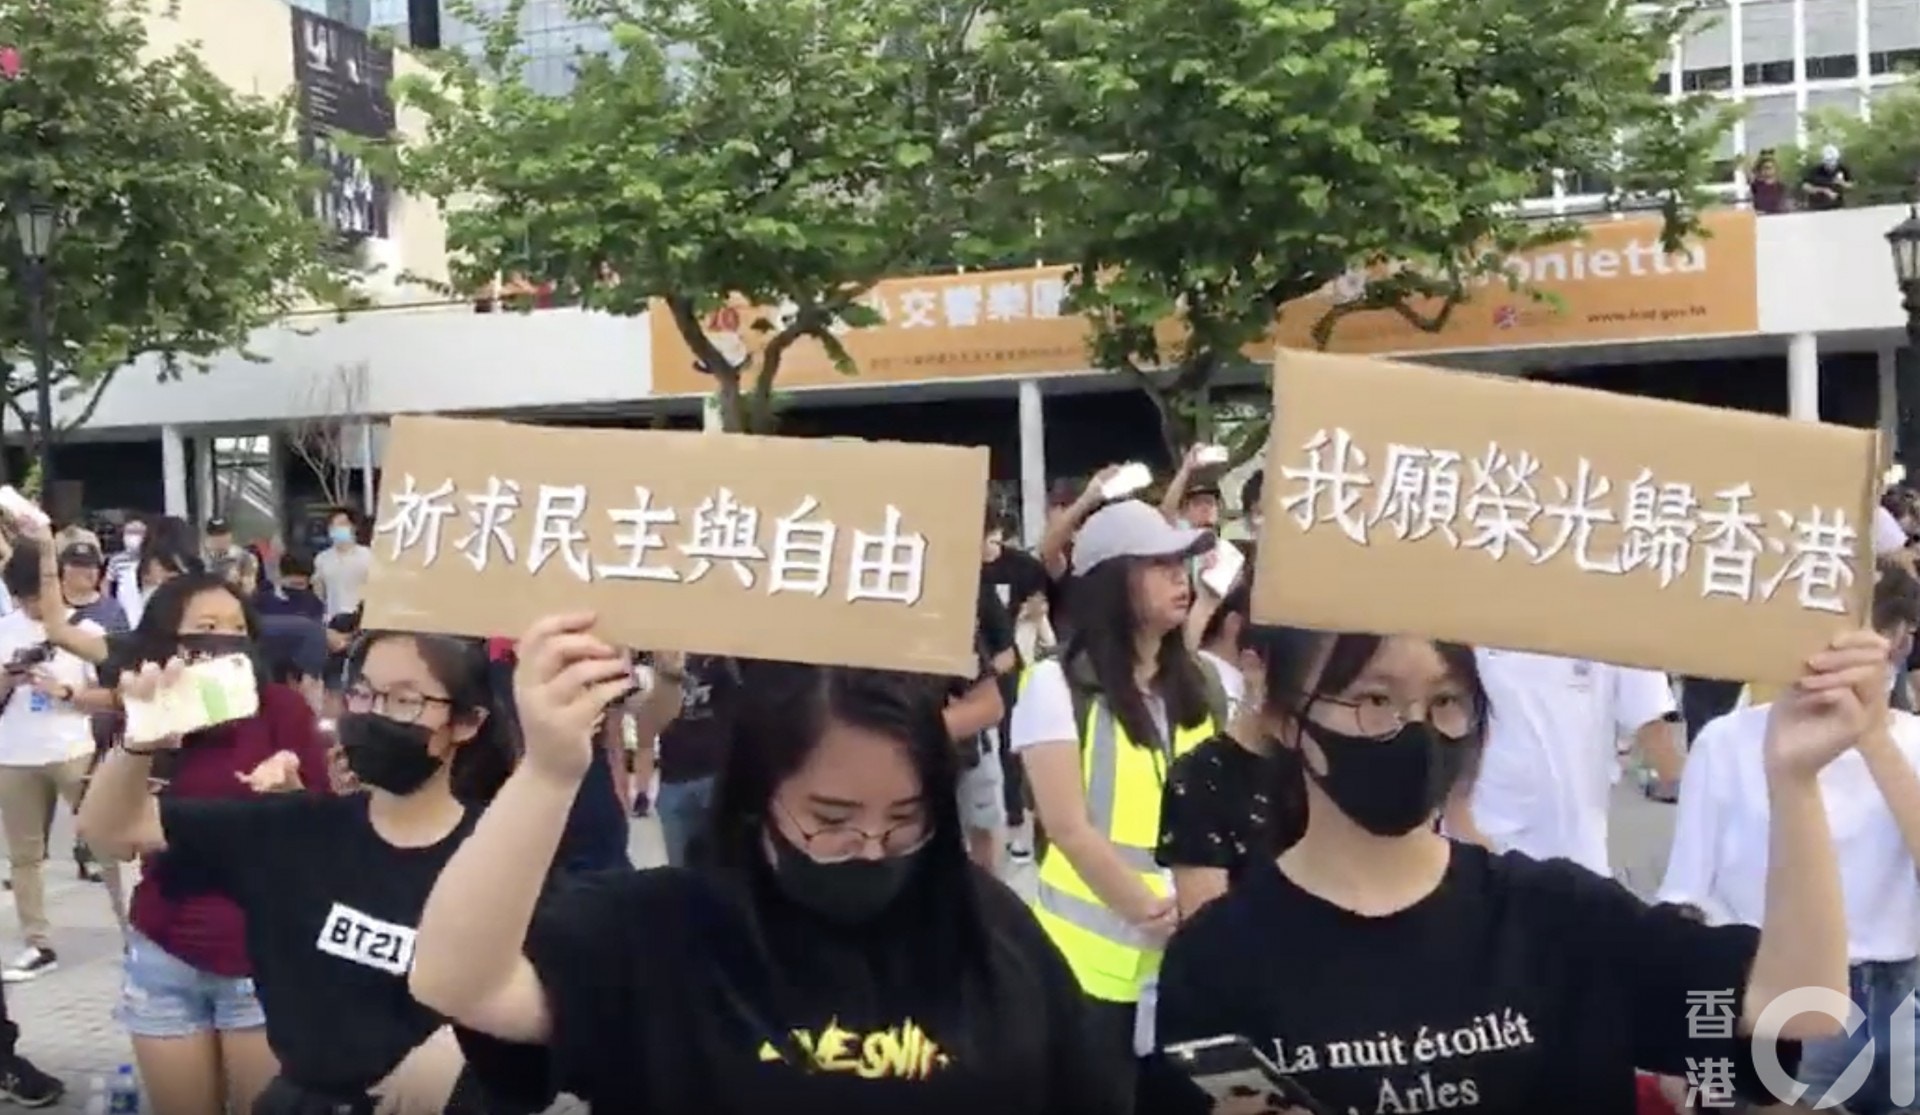 逃犯條例 數百中學生集會退休副校長 勿跌入社會對暴力論述 香港01 政情